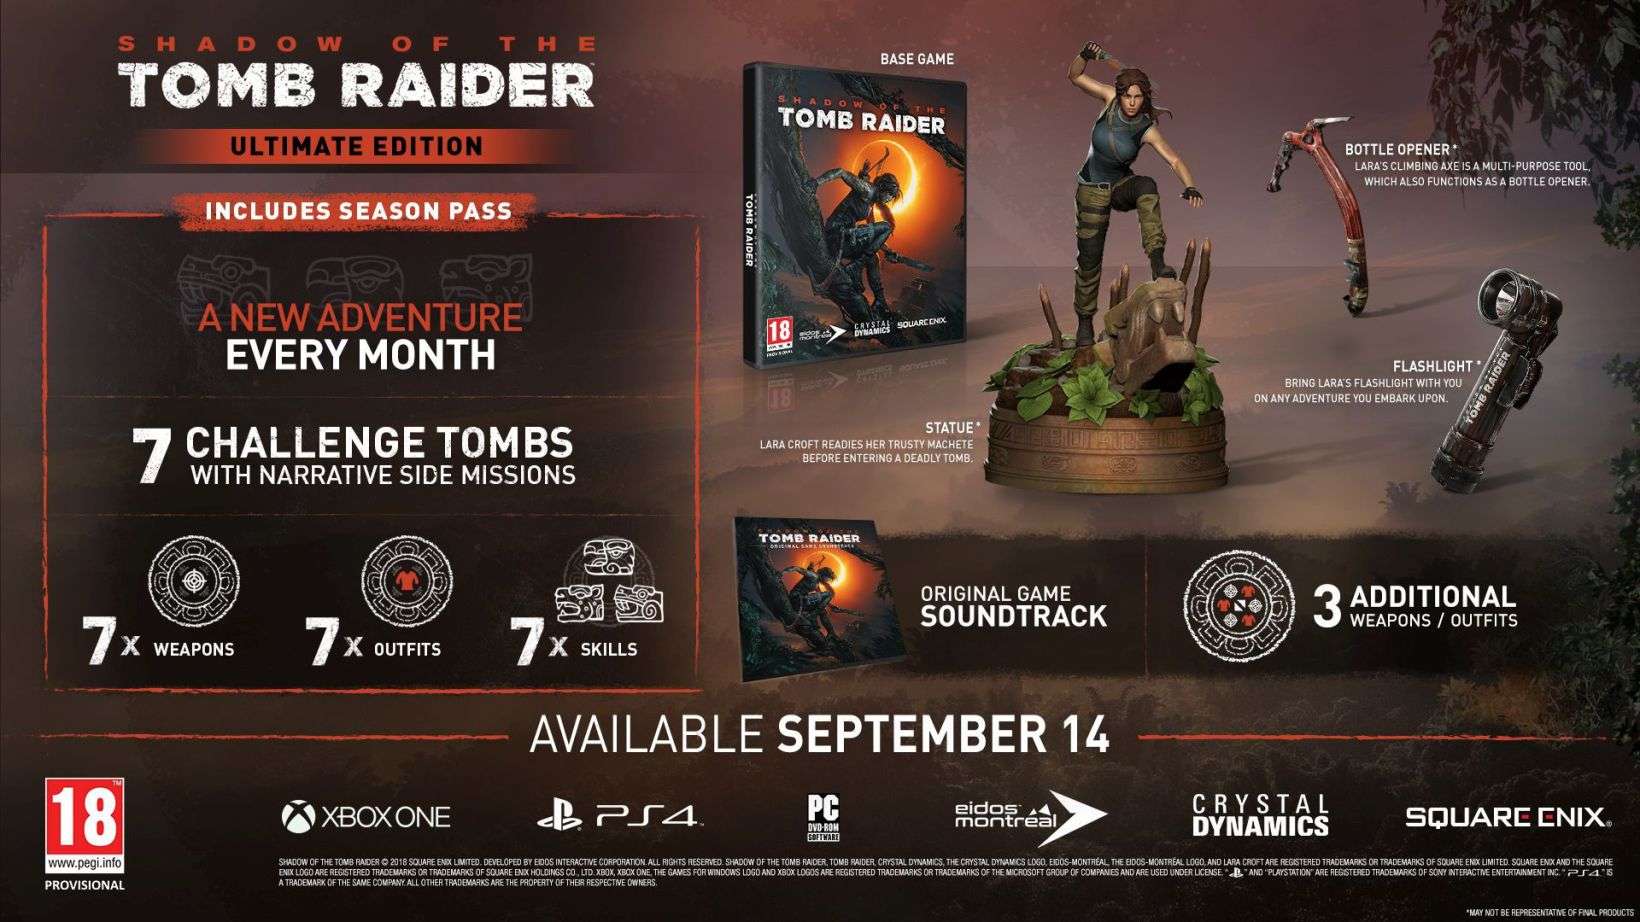 En Shadow of the Tomb Raider tendremos que detener un apocalipsis maya